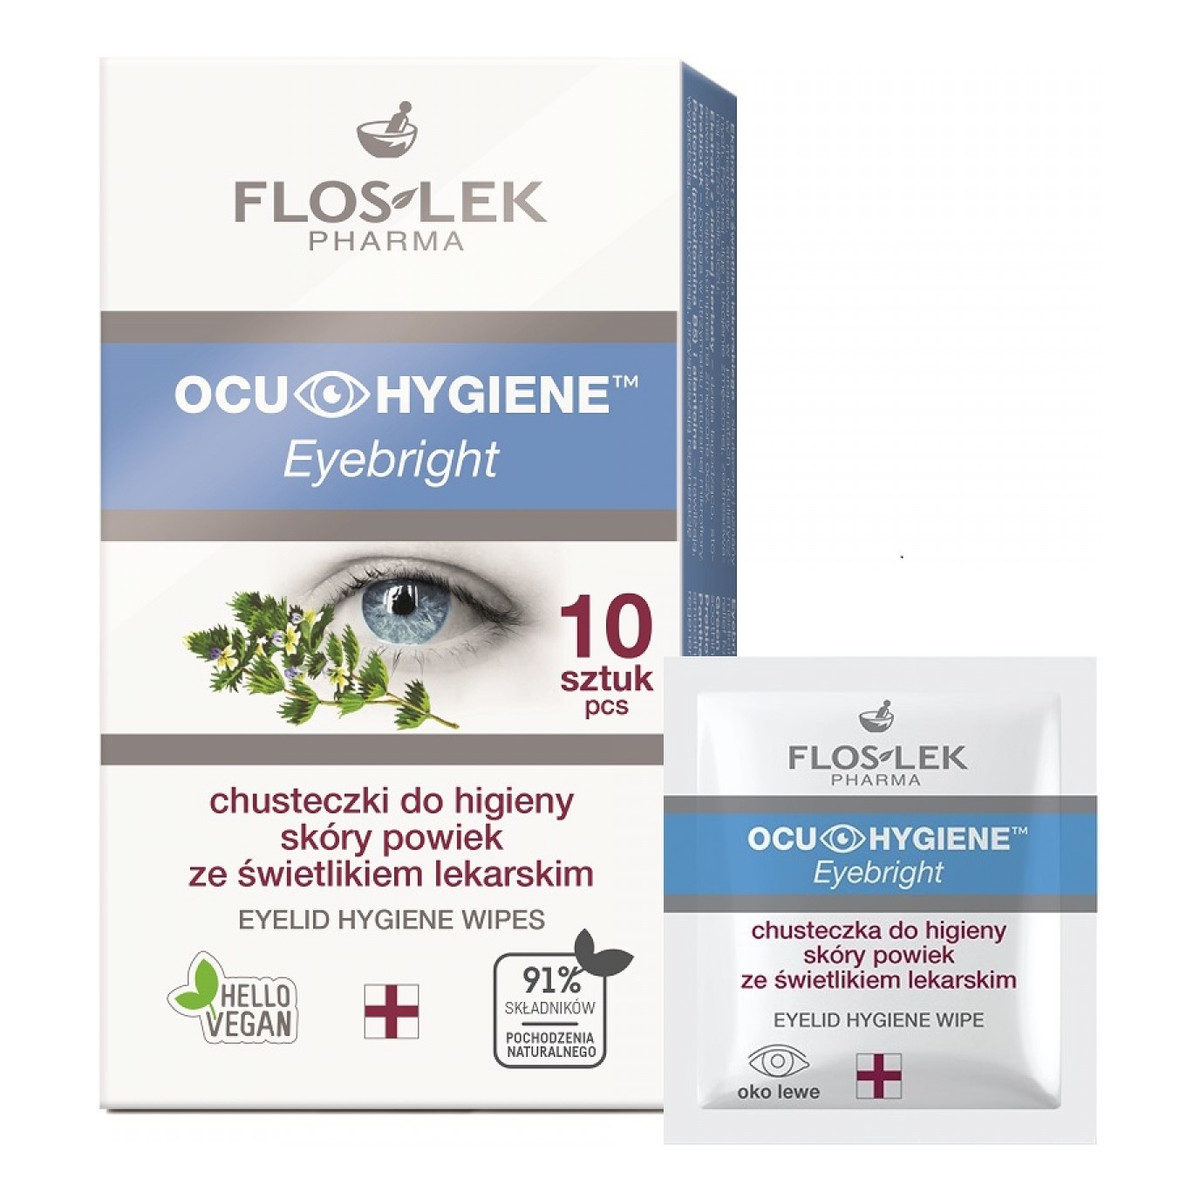 FlosLek Pharma Ocu Hygiene Eyebright Chusteczki do higieny skóry powiek ze świetlikiem 1 op. 10 szt.